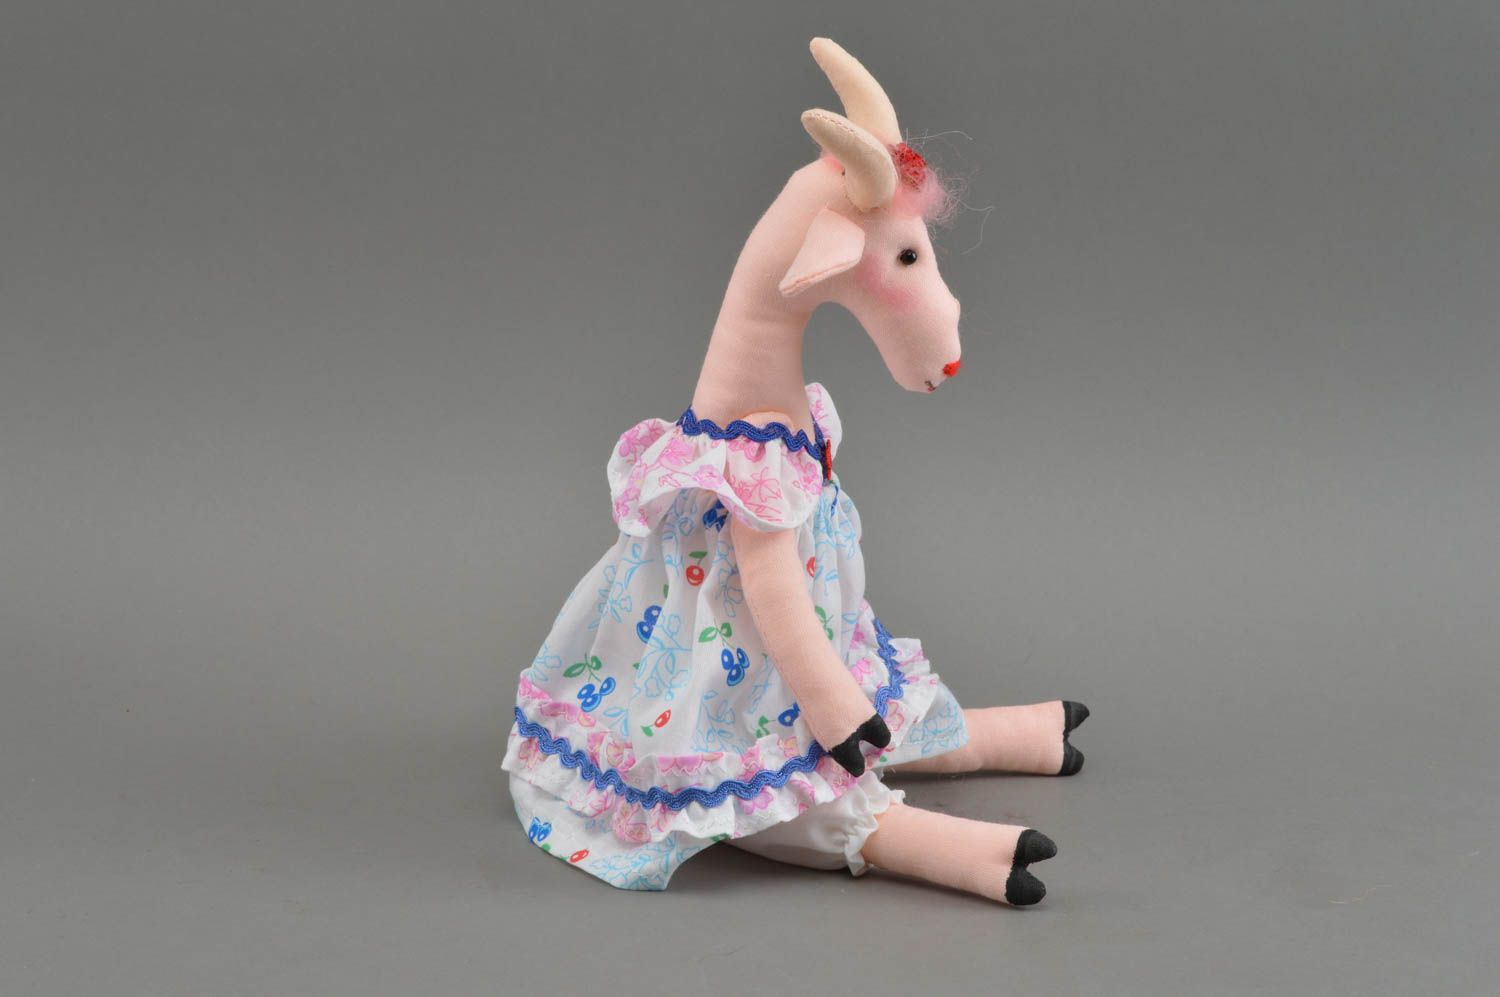 Оригинальная мягкая игрушка в виде козы в платье из ситца розовая ручная работа фото 2